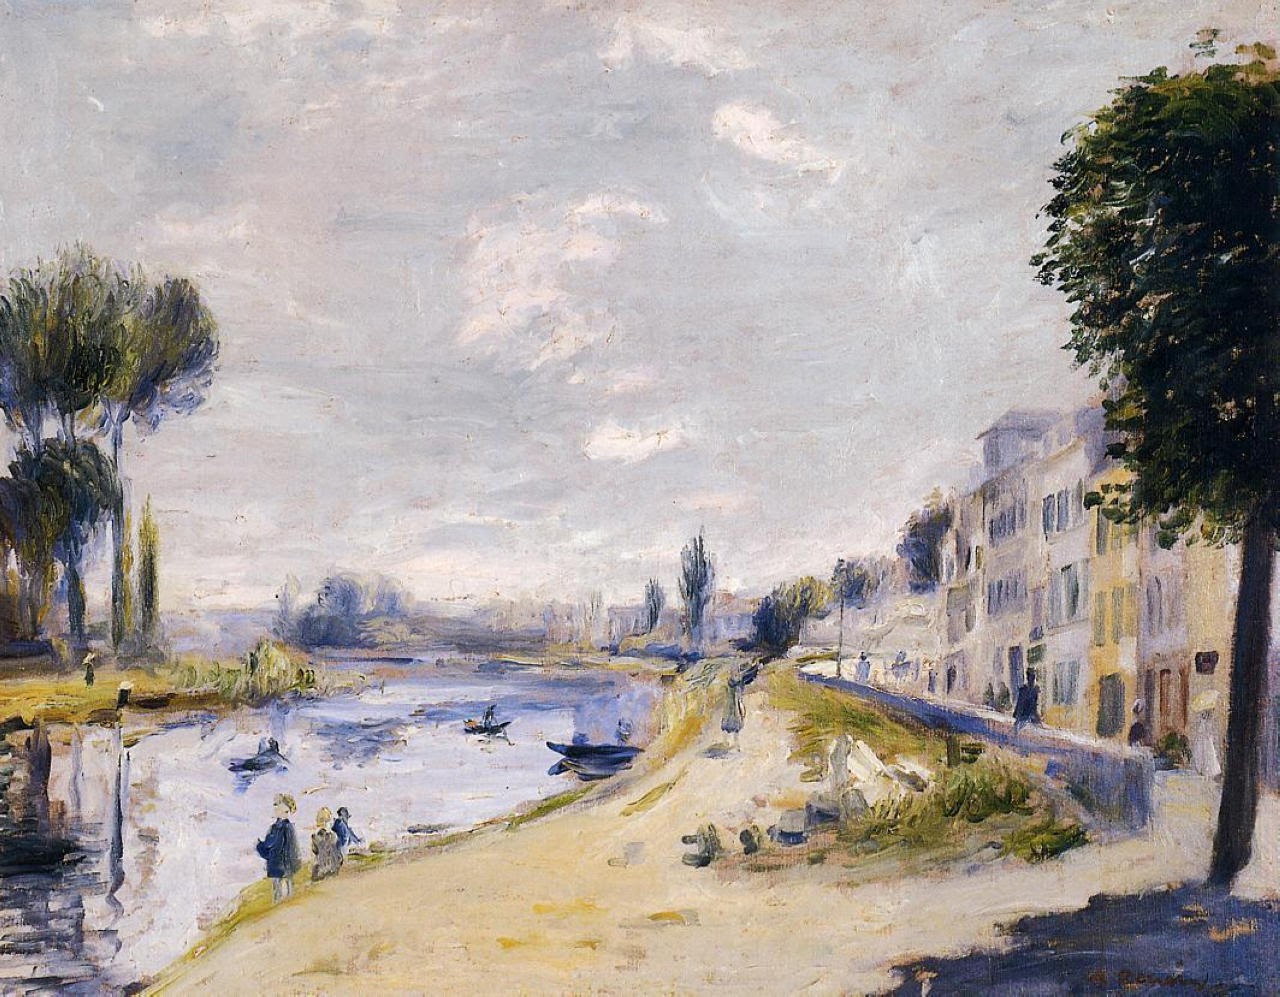 Pierre+Auguste+Renoir-1841-1-19 (215).jpg